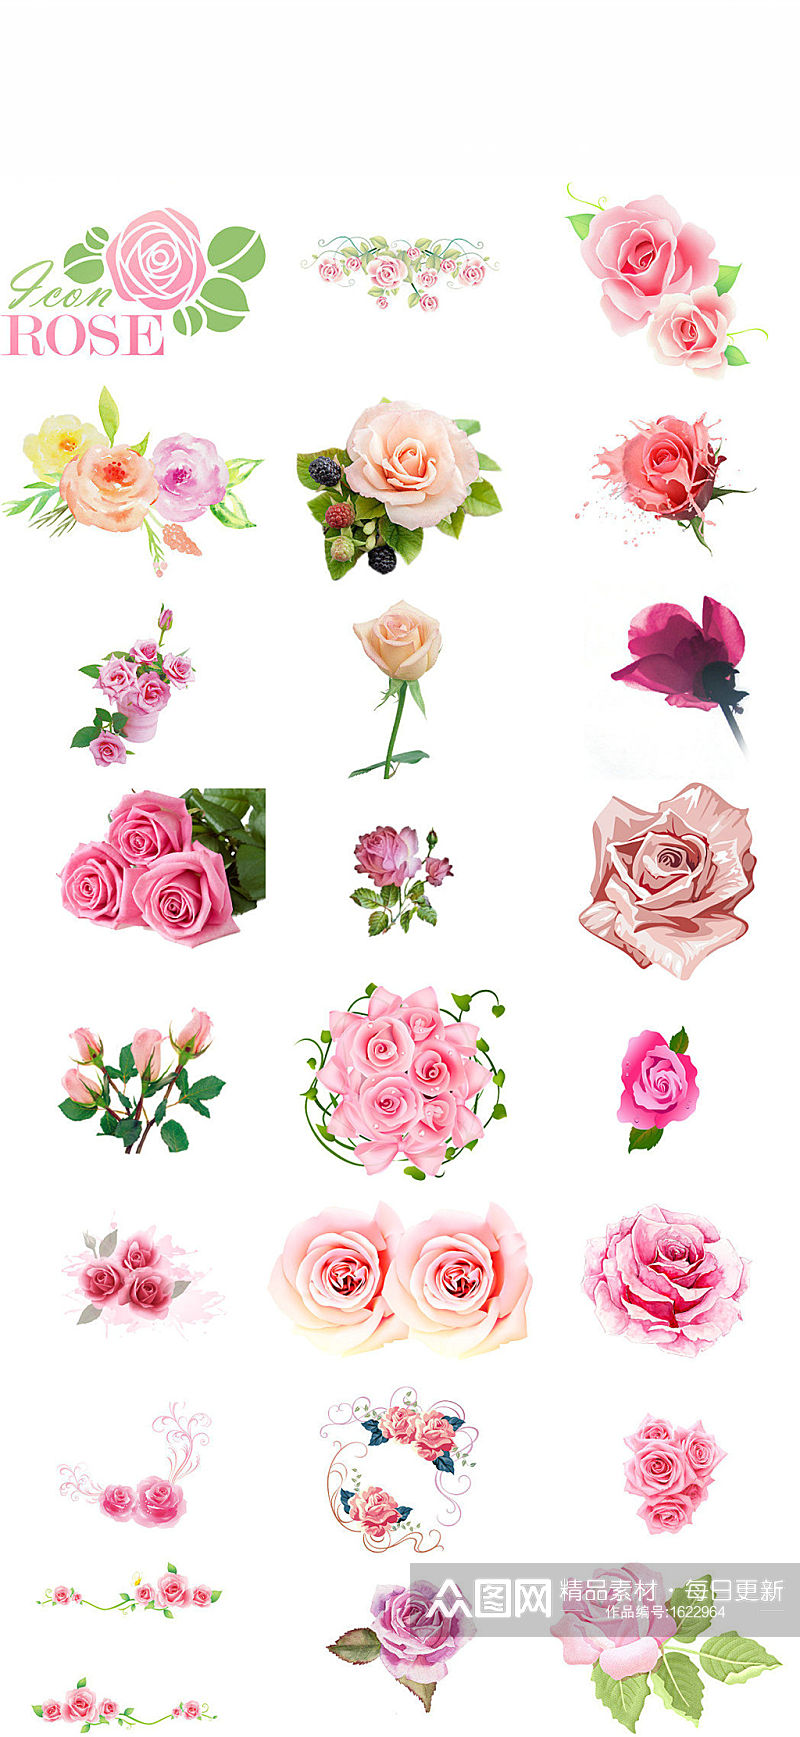 卡通粉色玫瑰造型设计图片素材素材